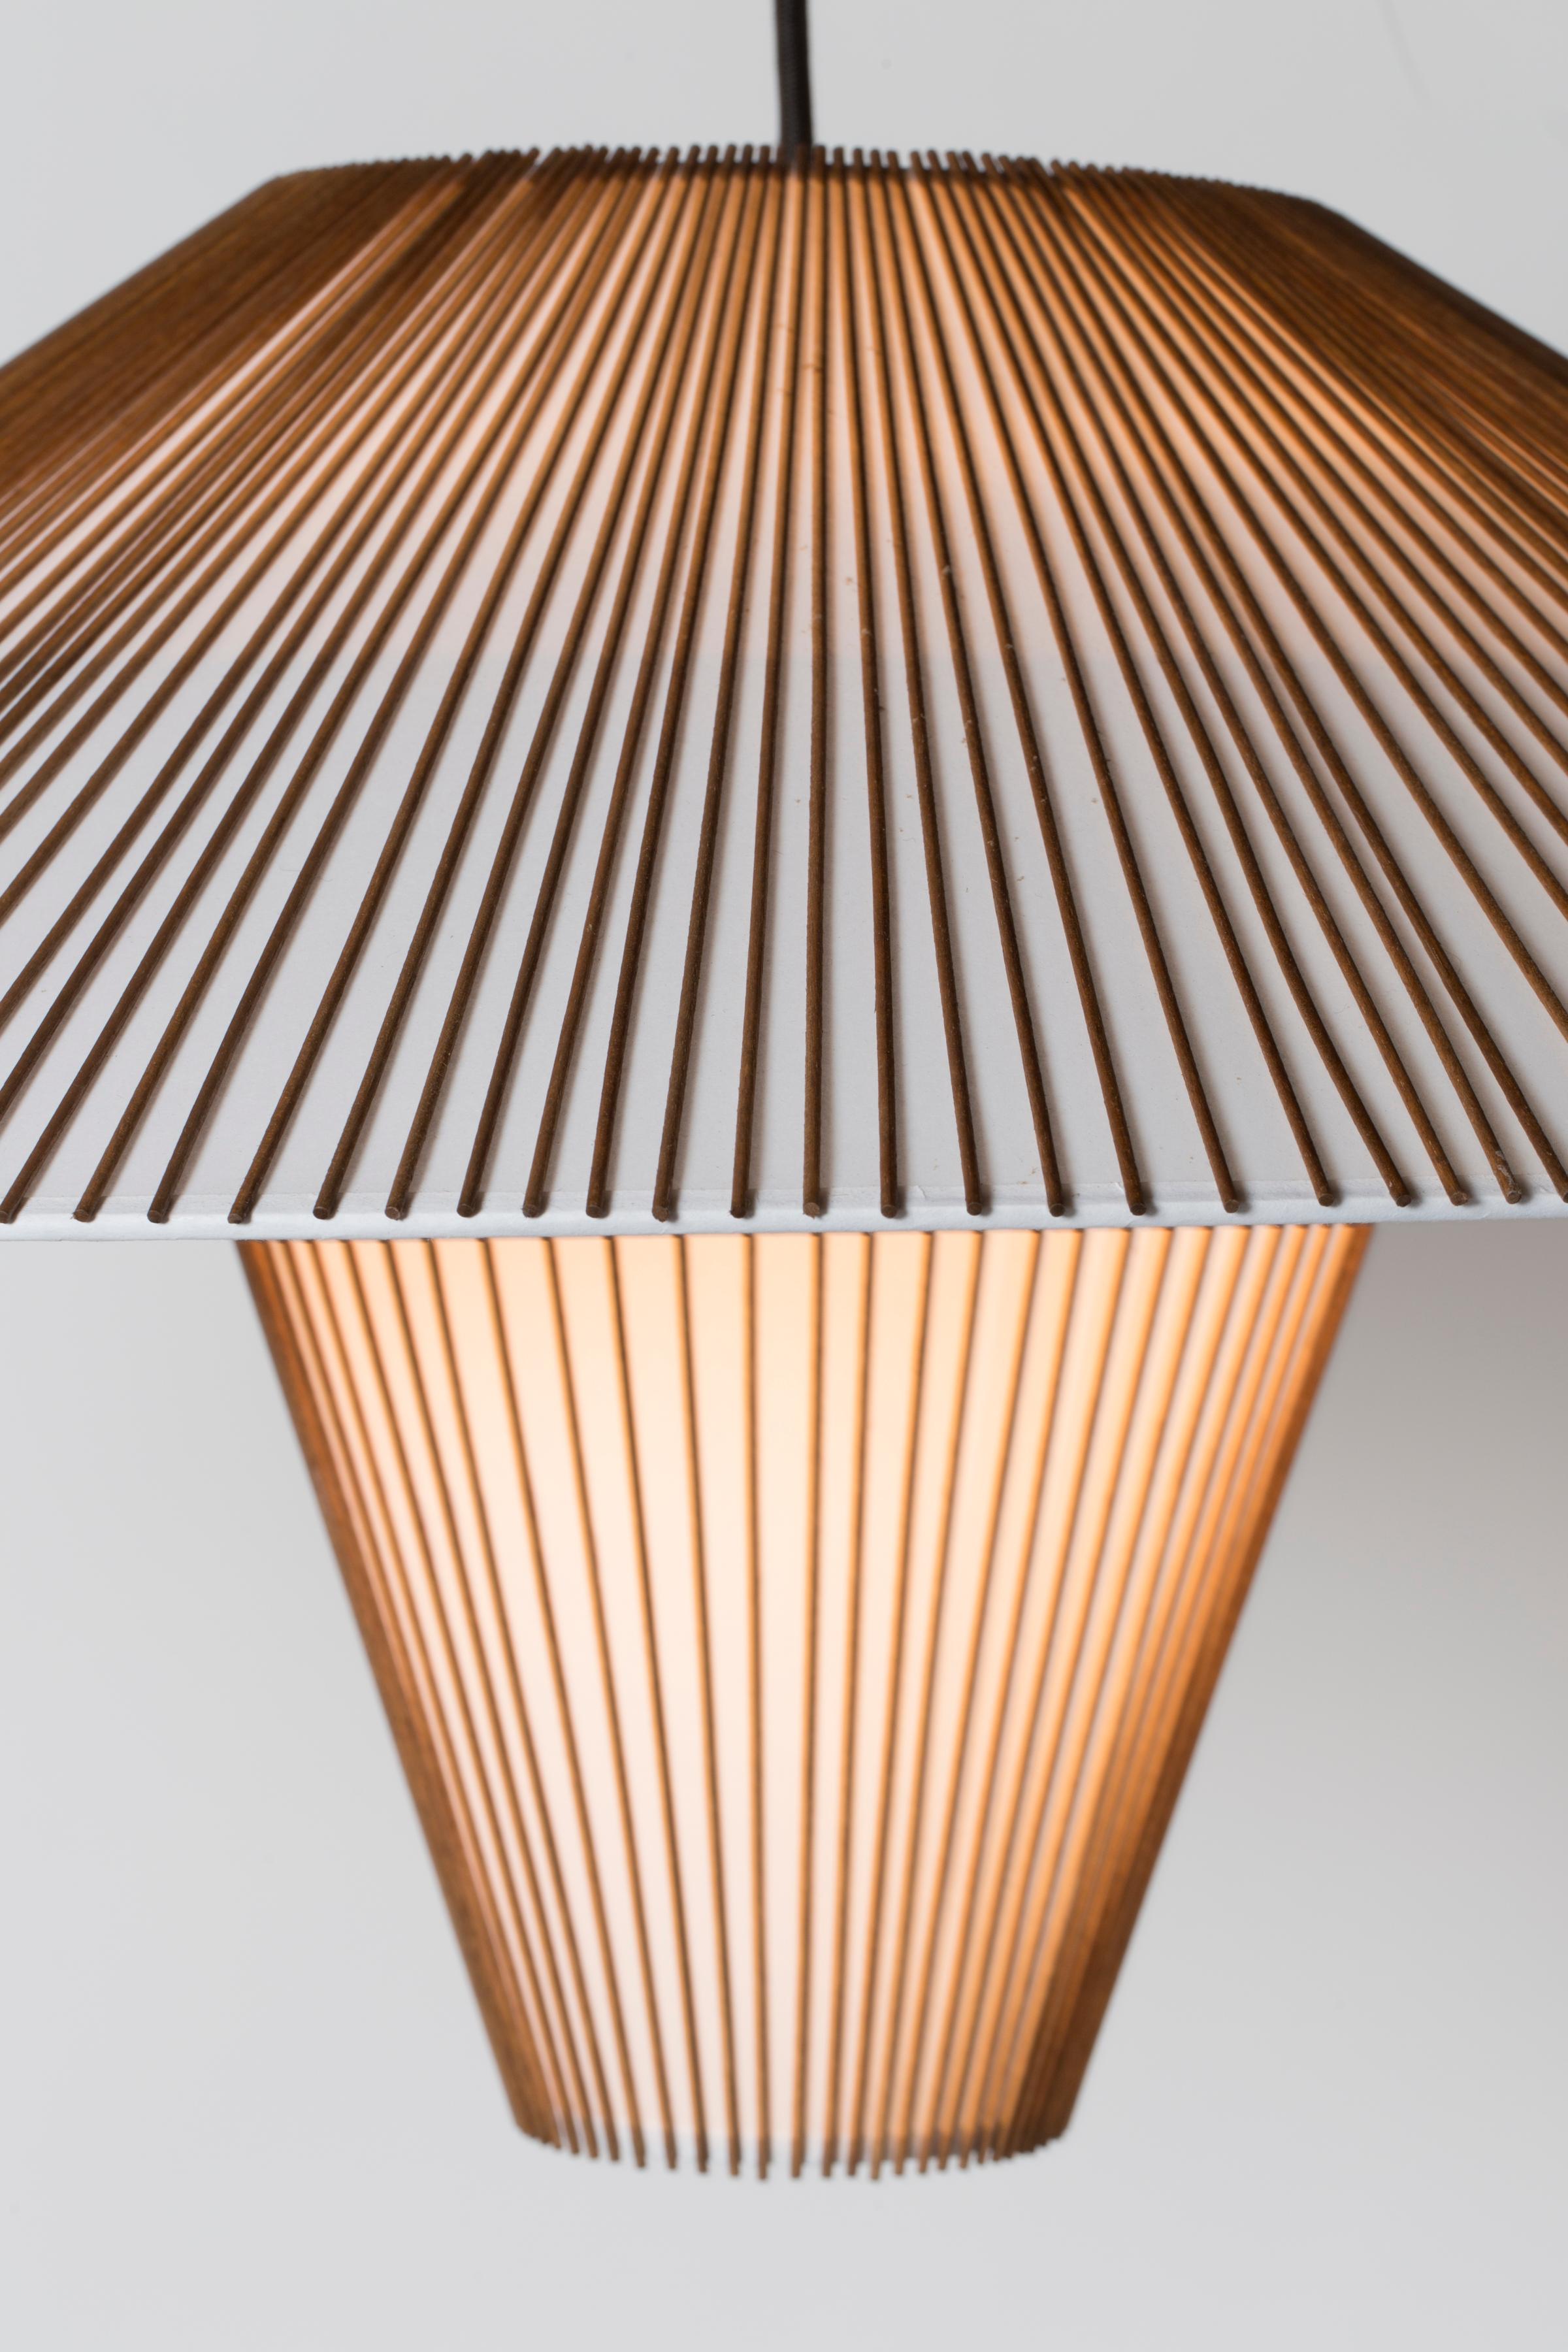 La Large Hanging Pendant fait partie de la Collection Smilow Lighting rééditée, conçue à l'origine par Mel Smilow en 1956 et officiellement réintroduite par sa fille Judy Smilow en 2017. Les pièces sculpturales et inspirées de la nature de cette